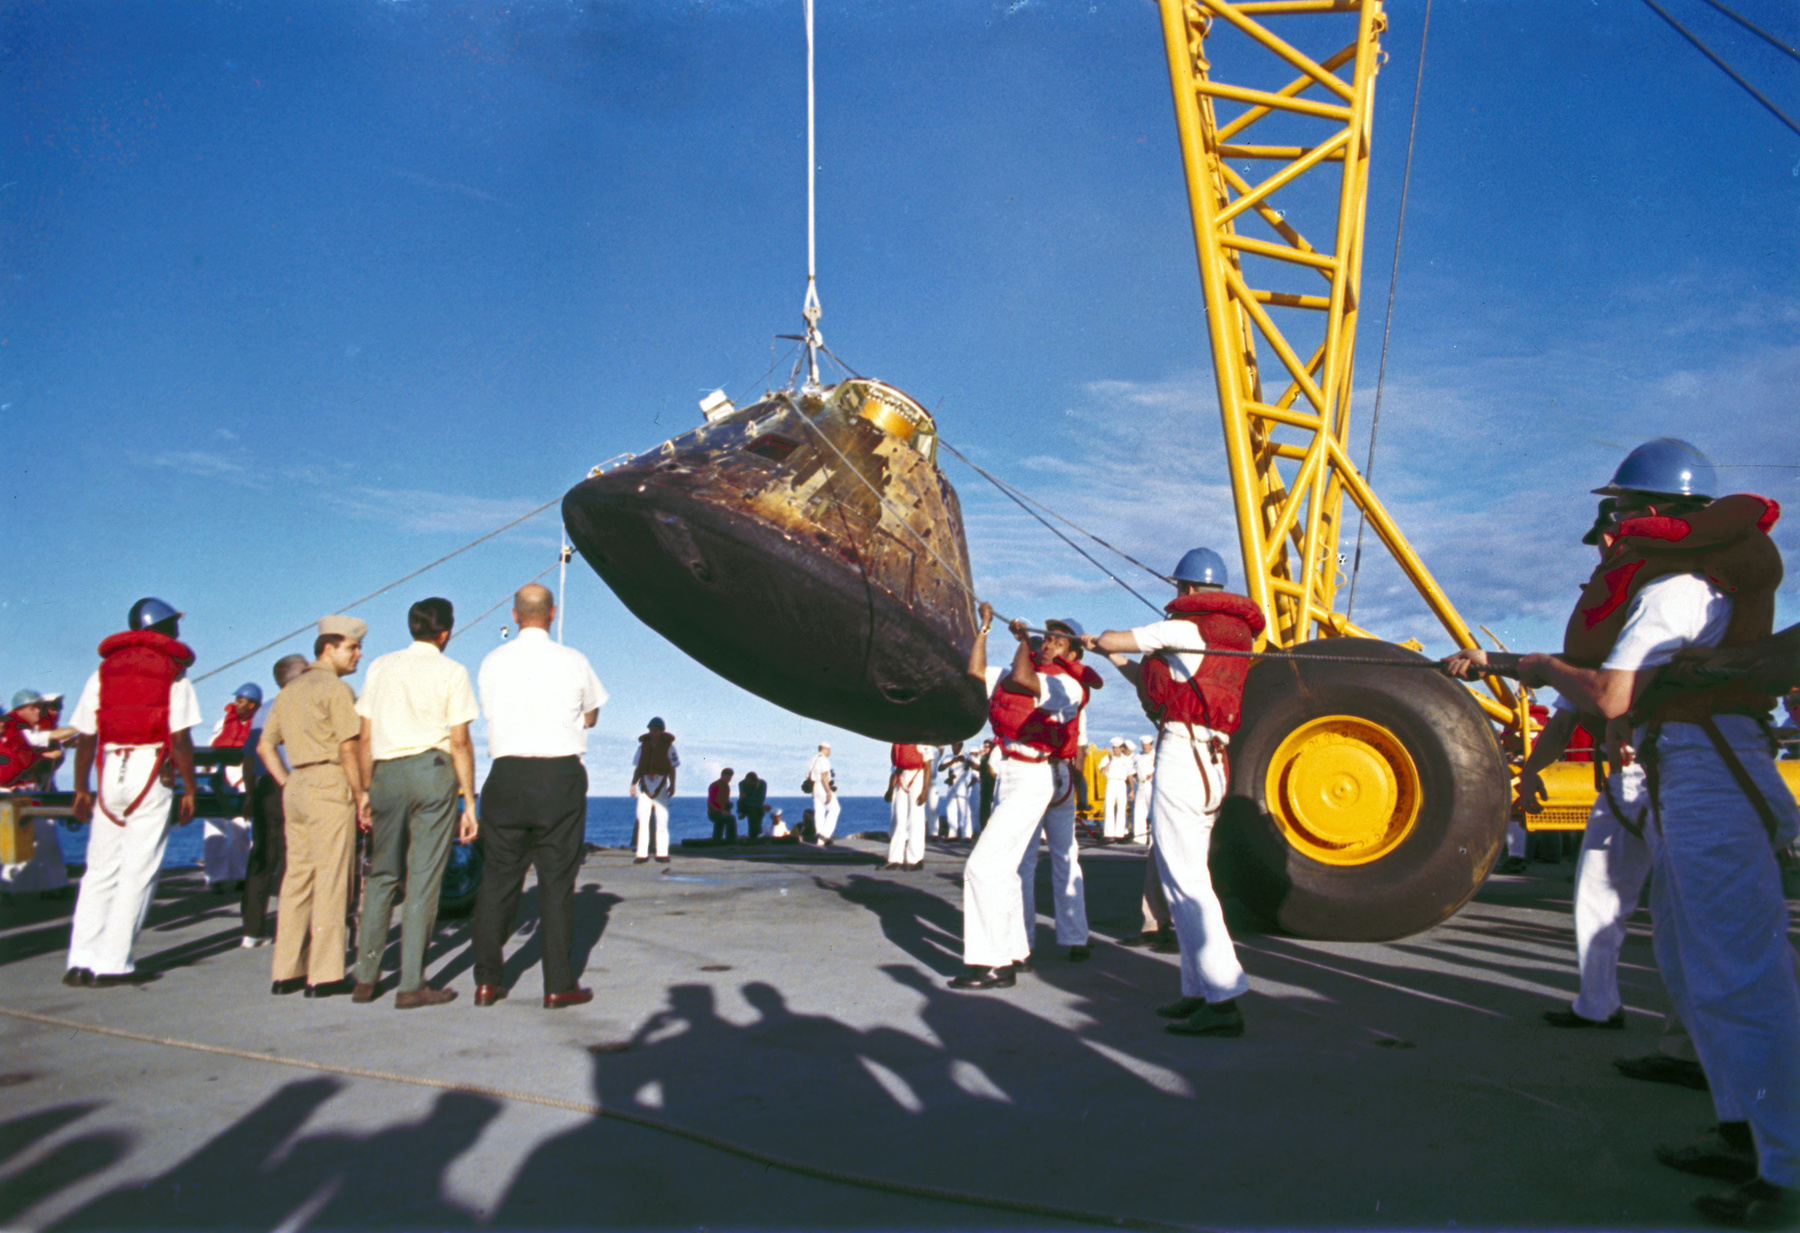 2009-ben egy nyílt nap keretén belül, szigorú felügyelet mellett ilyen közelről megnézhették a múzeumlátogatók az űrhajó belsejét. 